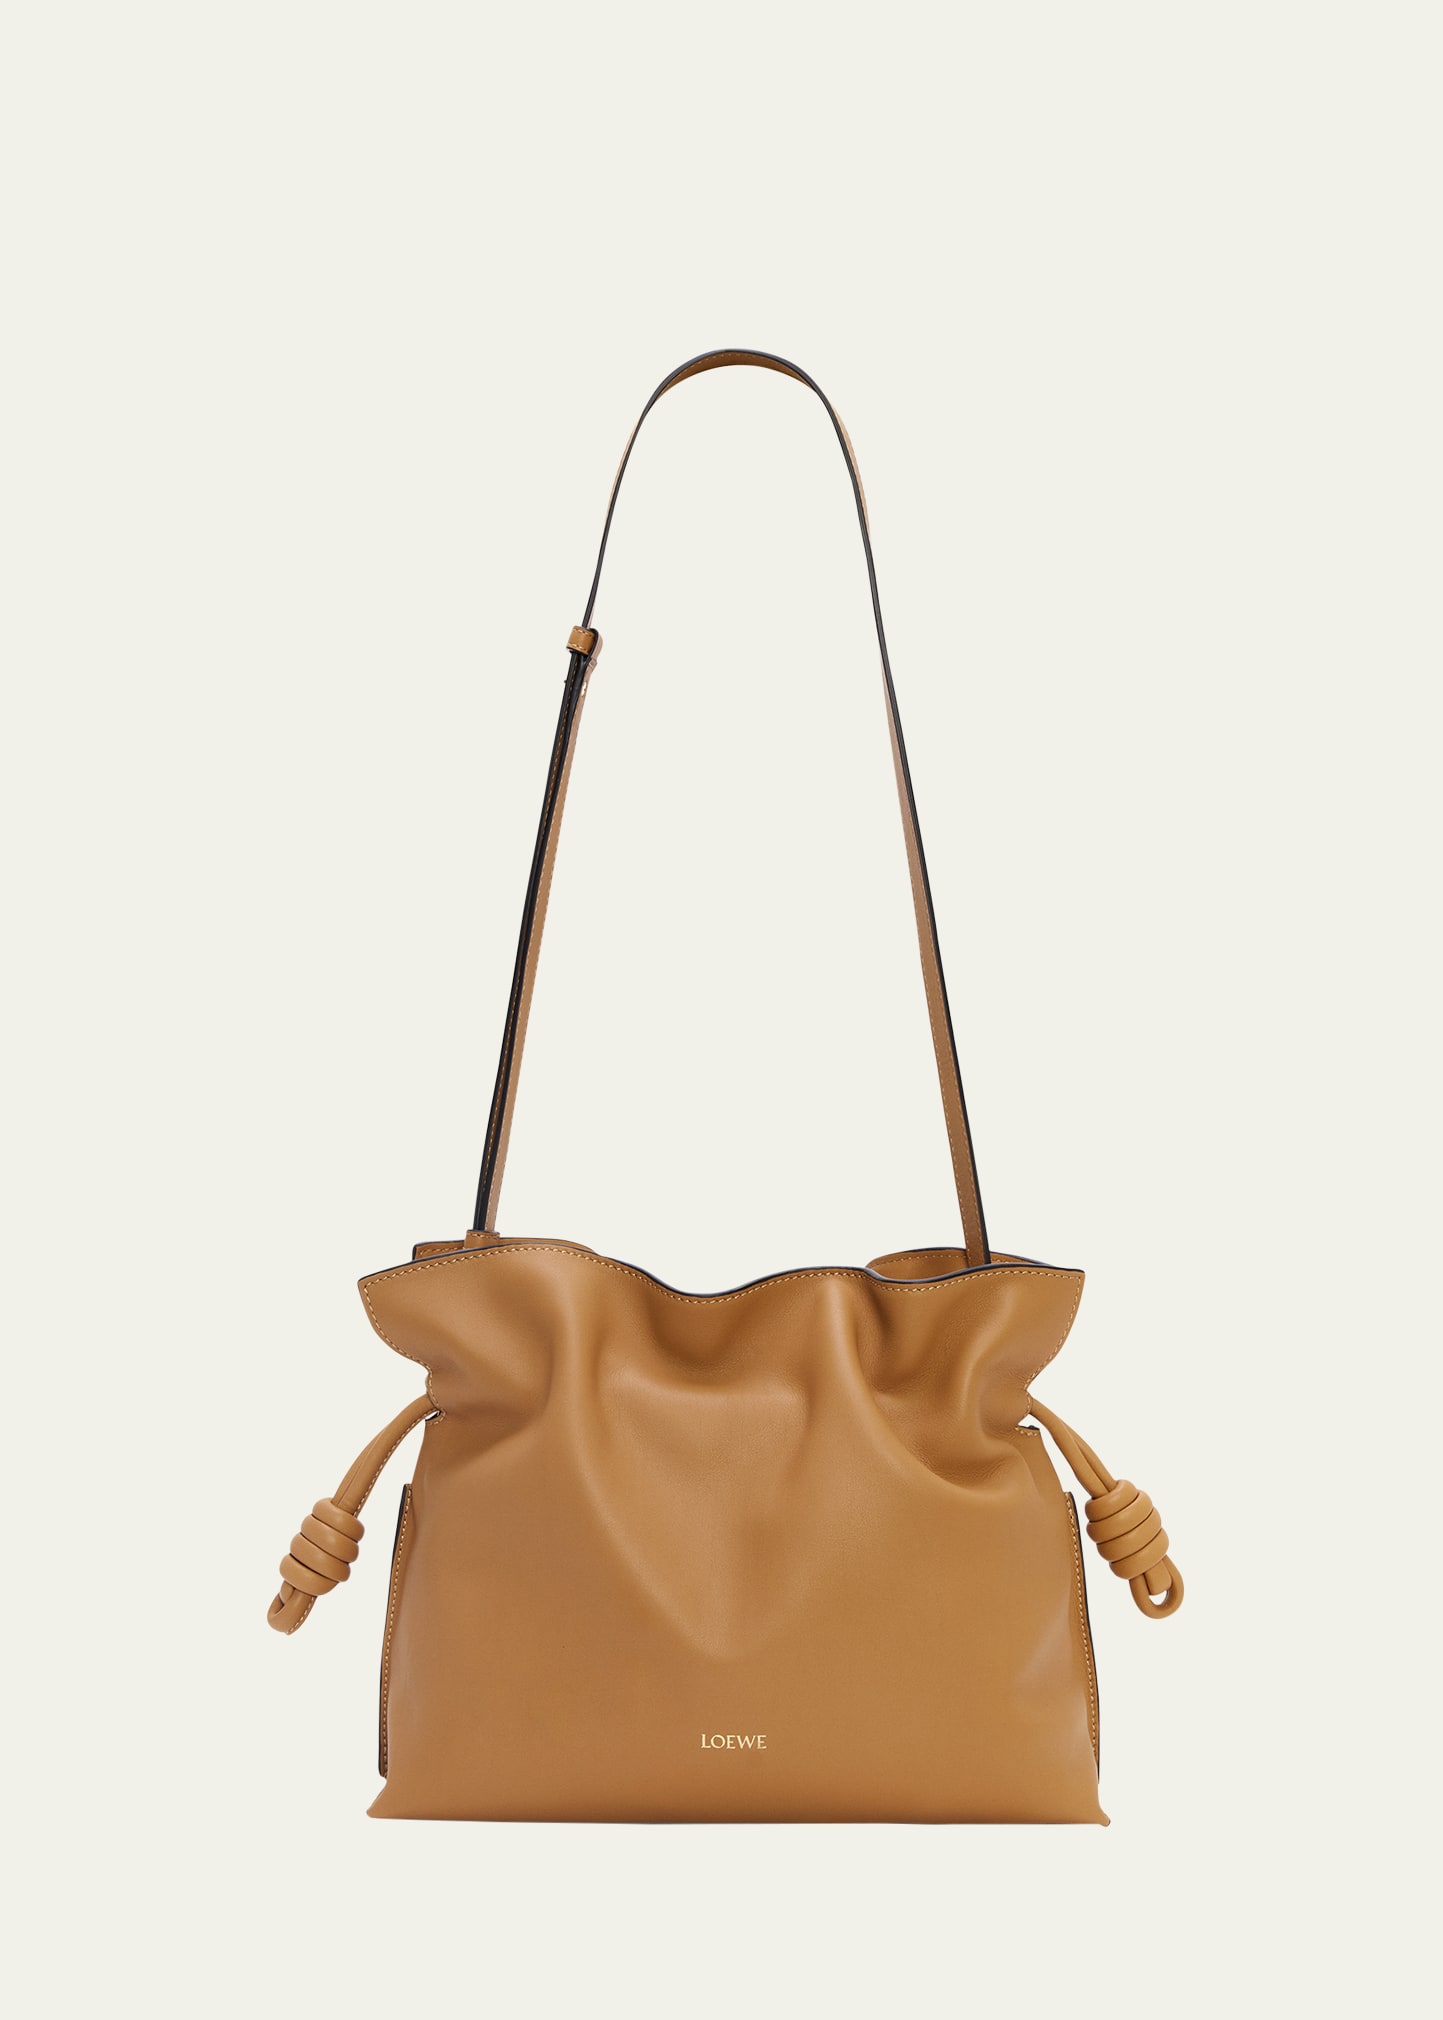 Loewe Flamenco Leather Clutch Bag | Bergdorf Goodman